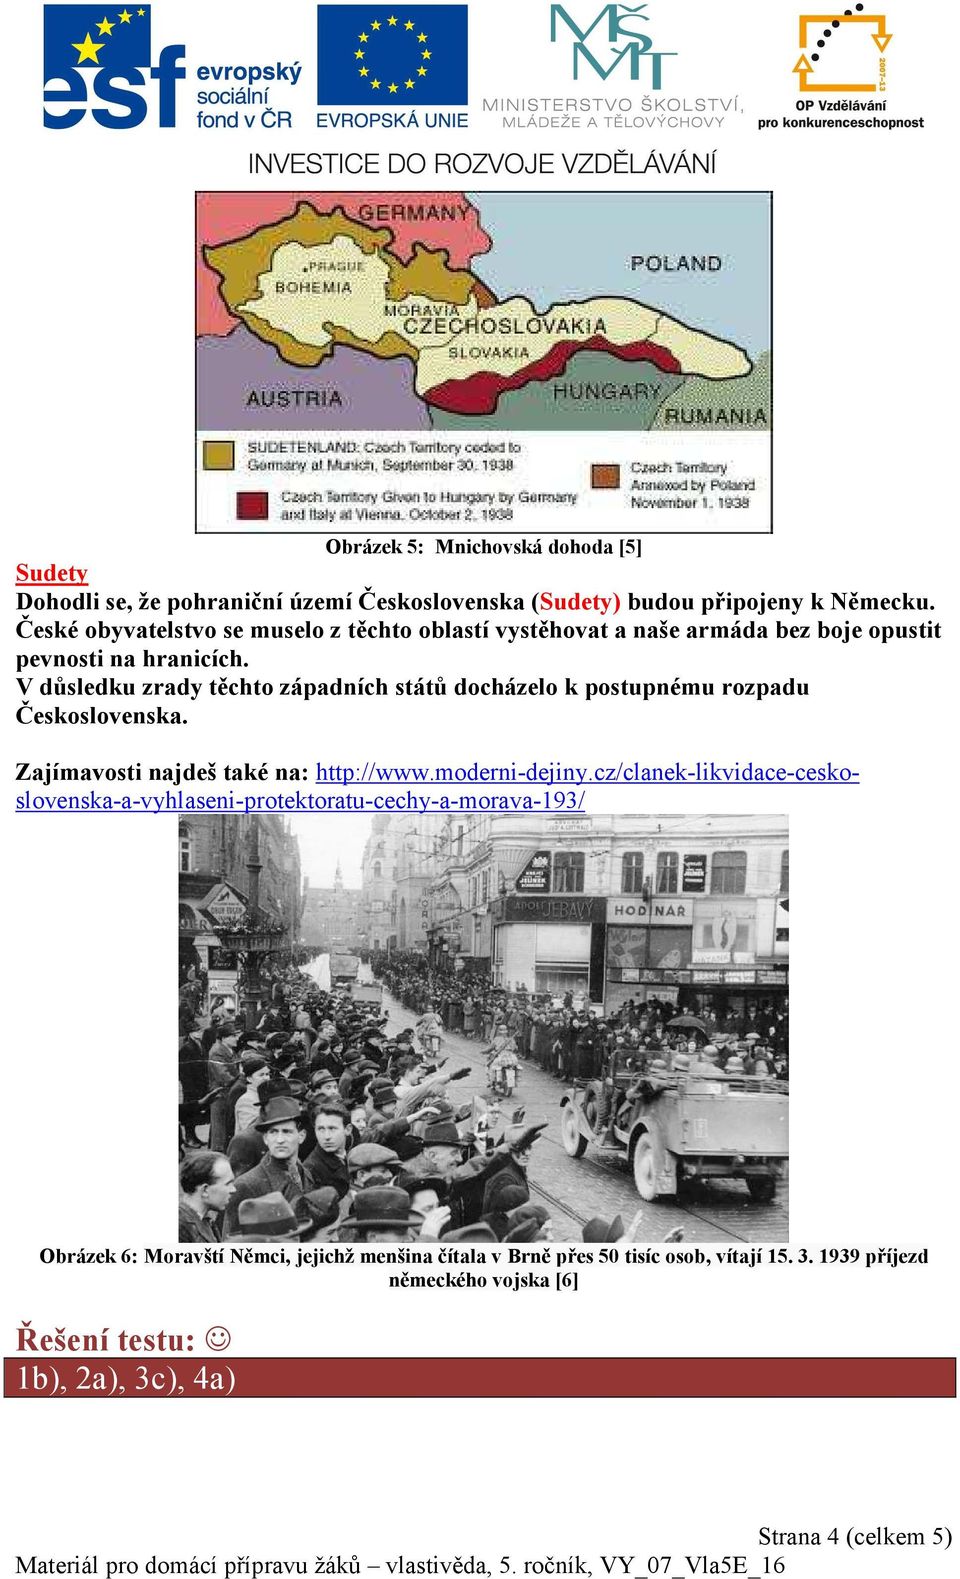 V důsledku zrady těchto západních států docházelo k postupnému rozpadu Československa. Zajímavosti najdeš také na: http://www.moderni-dejiny.